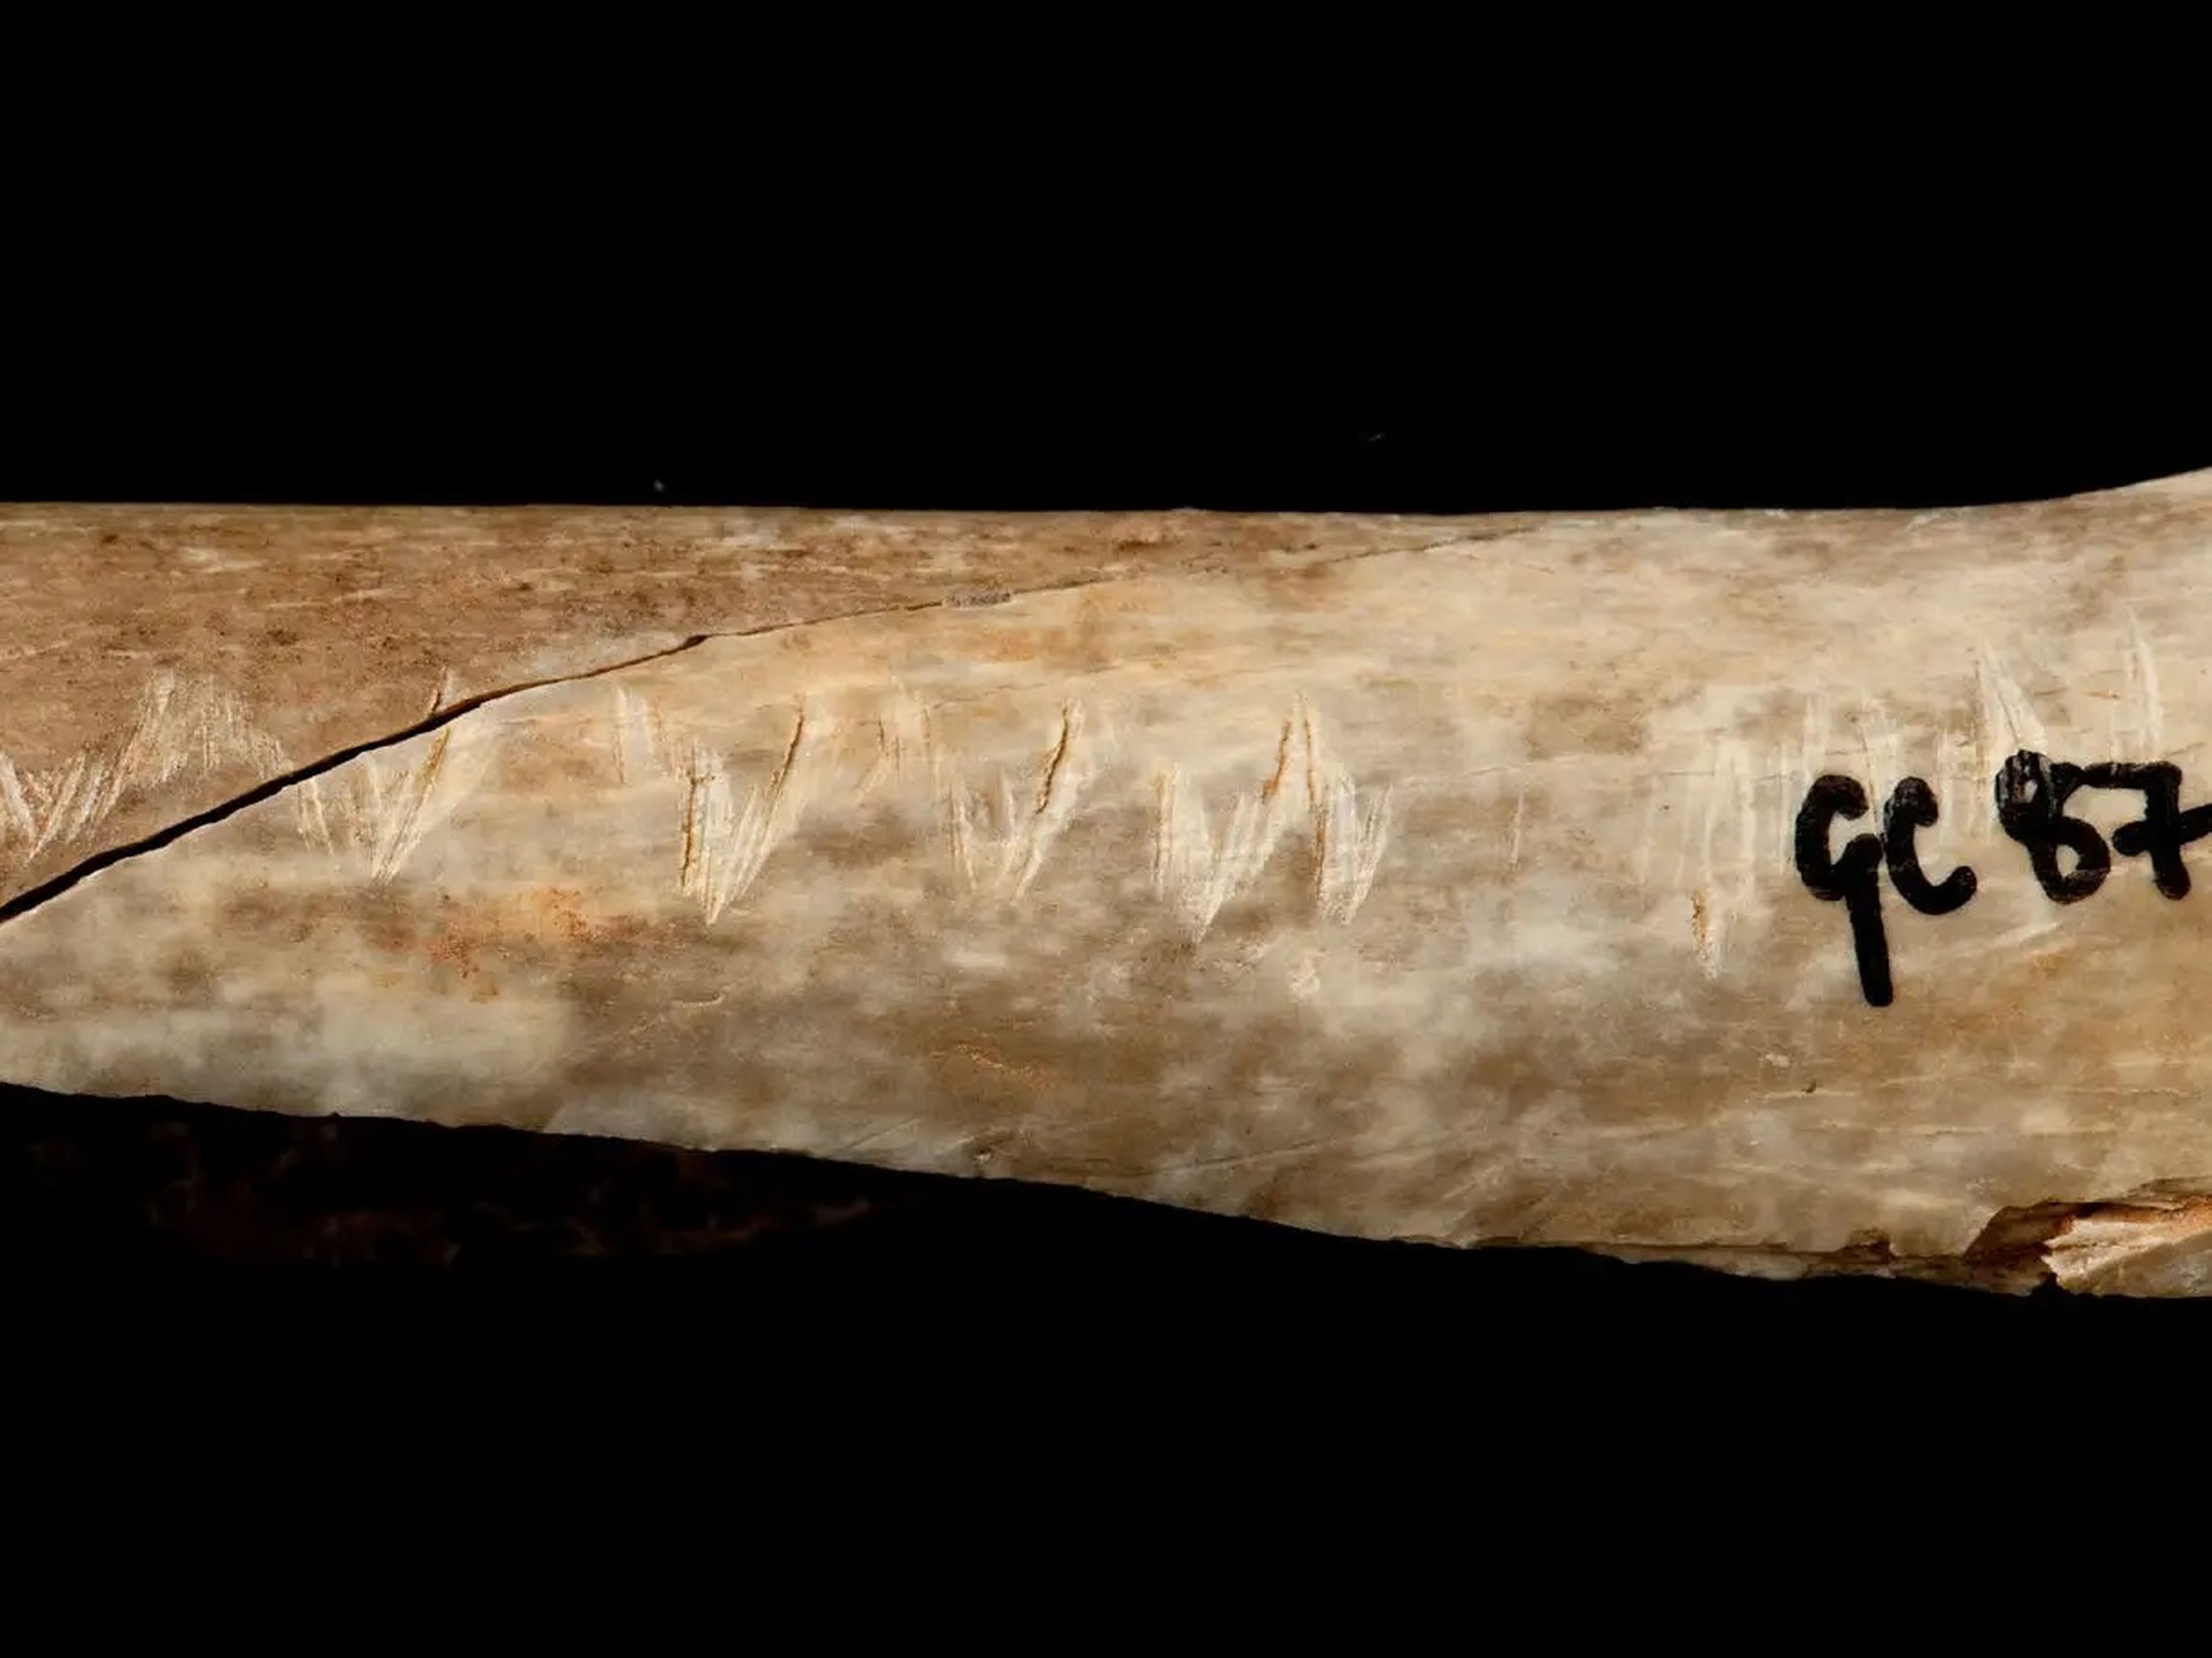 Un hueso del Paleolítico Superior grabado con marcas asociadas al canibalismo ritual, perteneciente al Museo de Historia Natural de Londres.